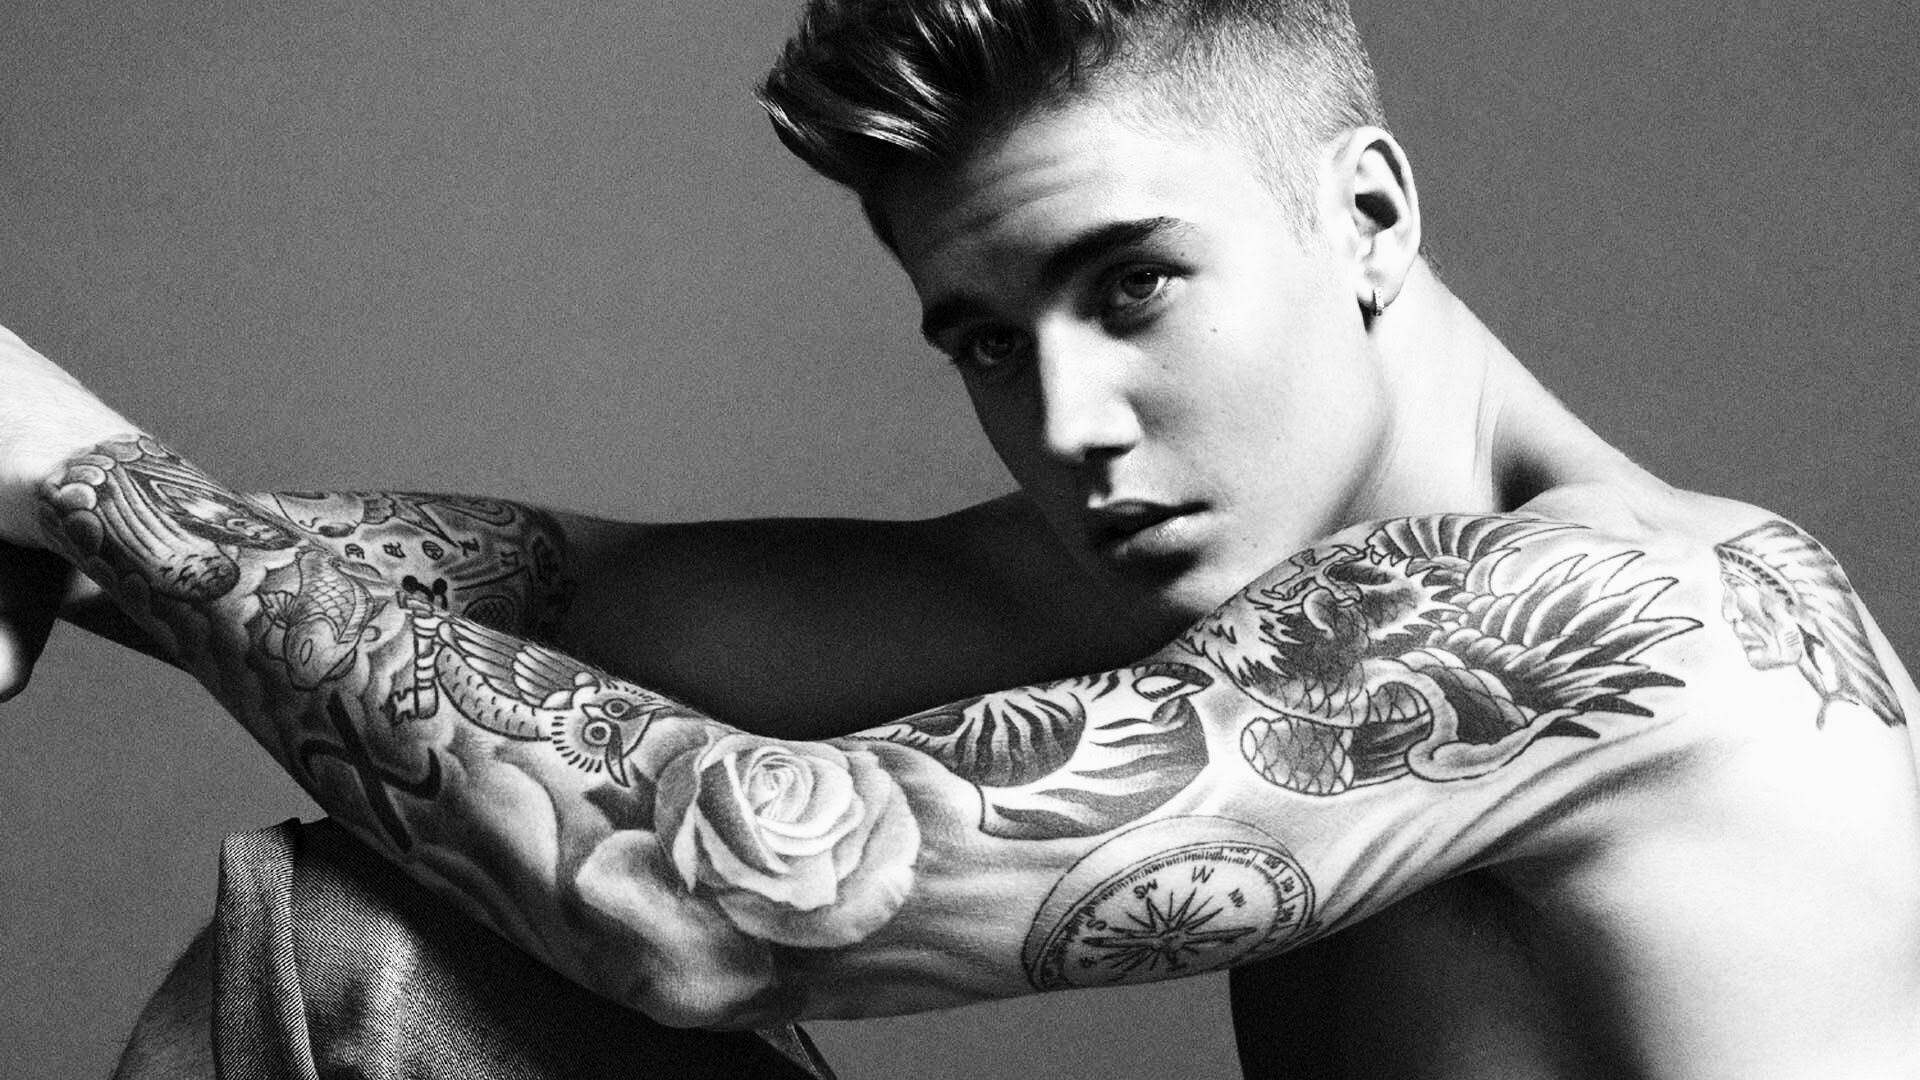 Justin Bieber Arm Tattoo